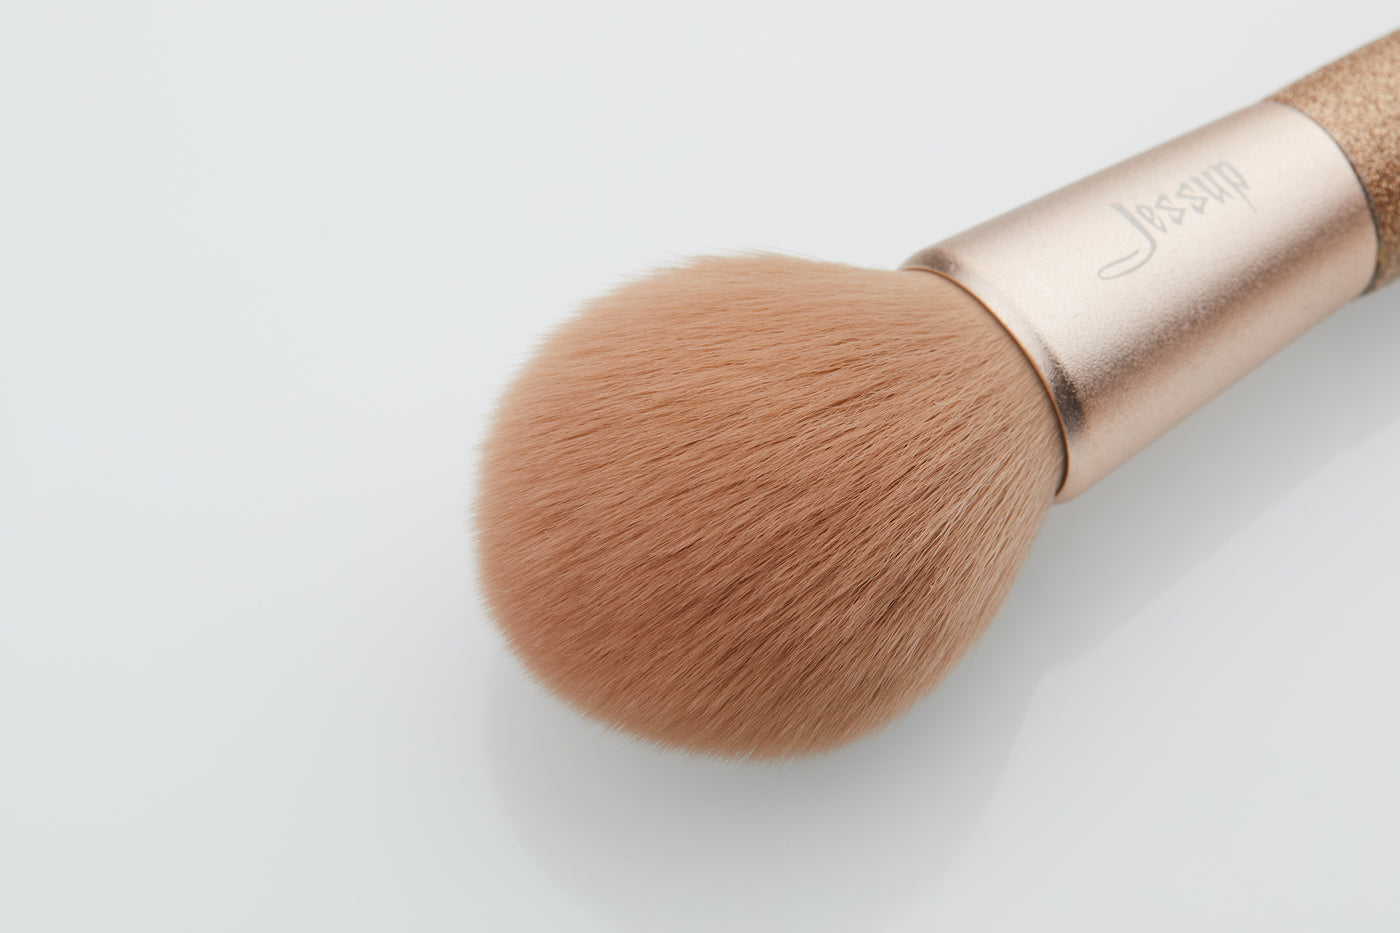 luxury makeup eye brushes set soft vegan gold 8pcs - Jessup Beauty UK